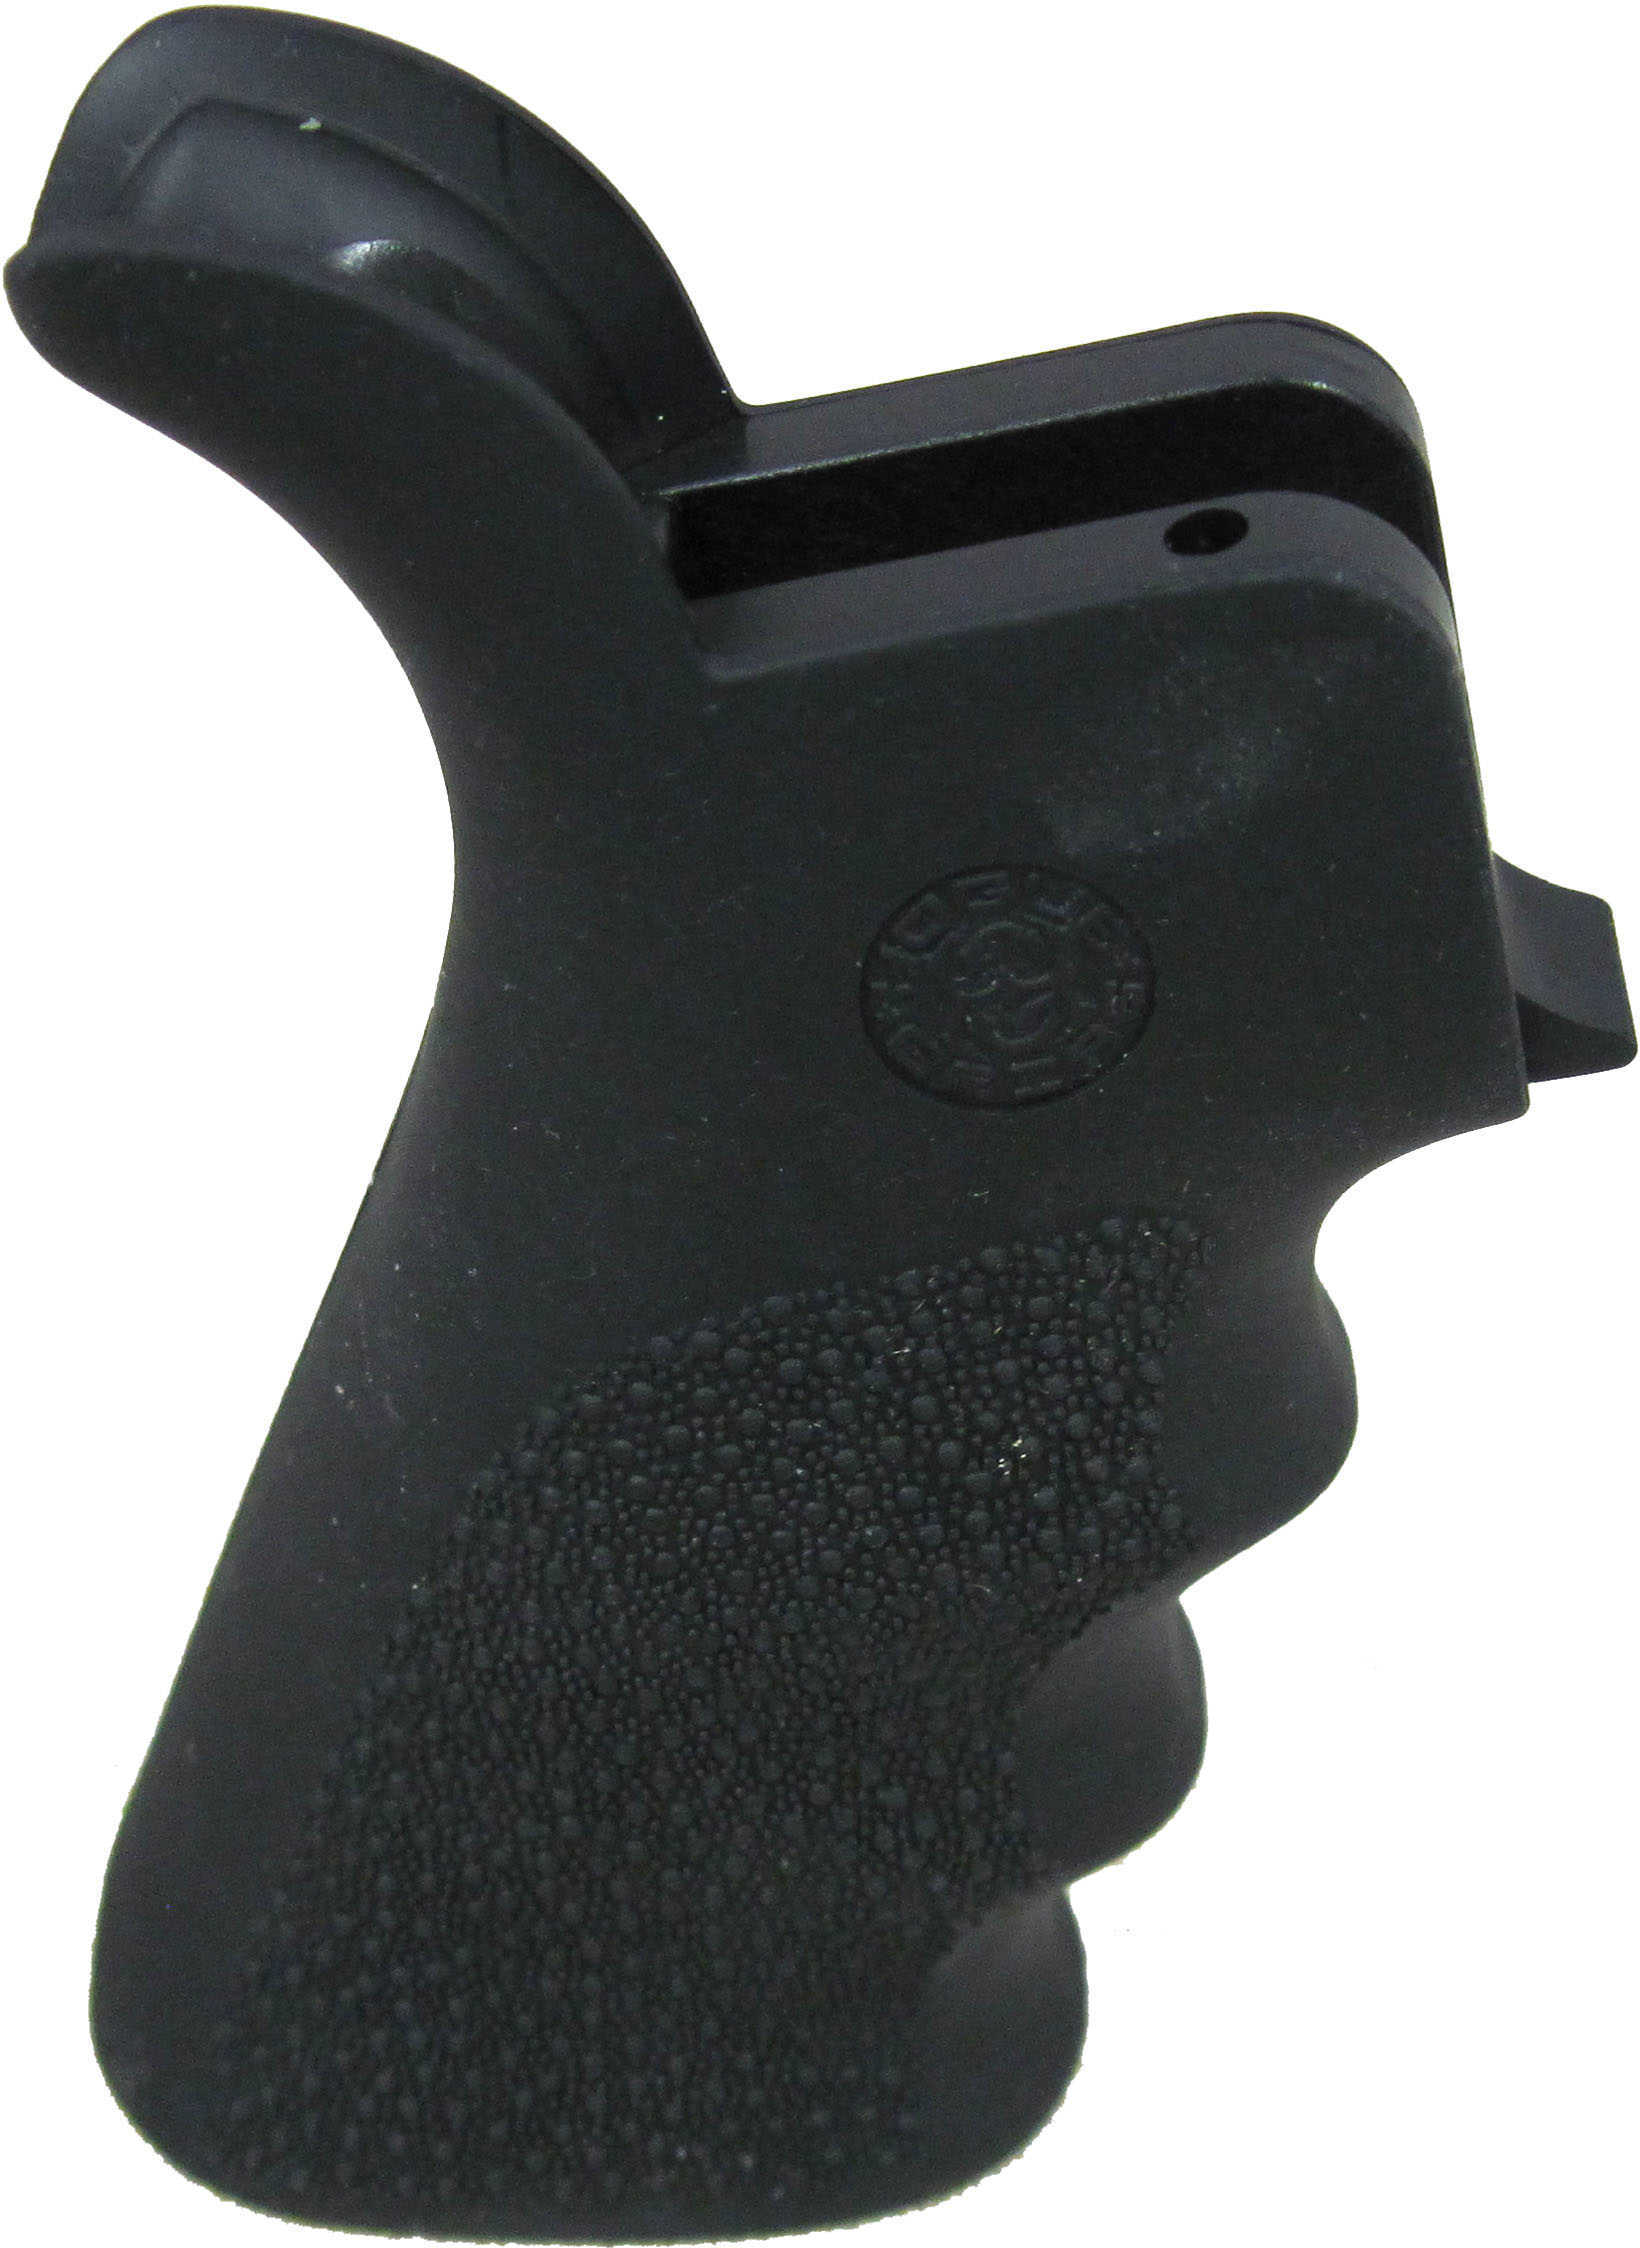 Hogue Grips Beavertail AR-15/M16 Rubber Finger Grooves Black 15020